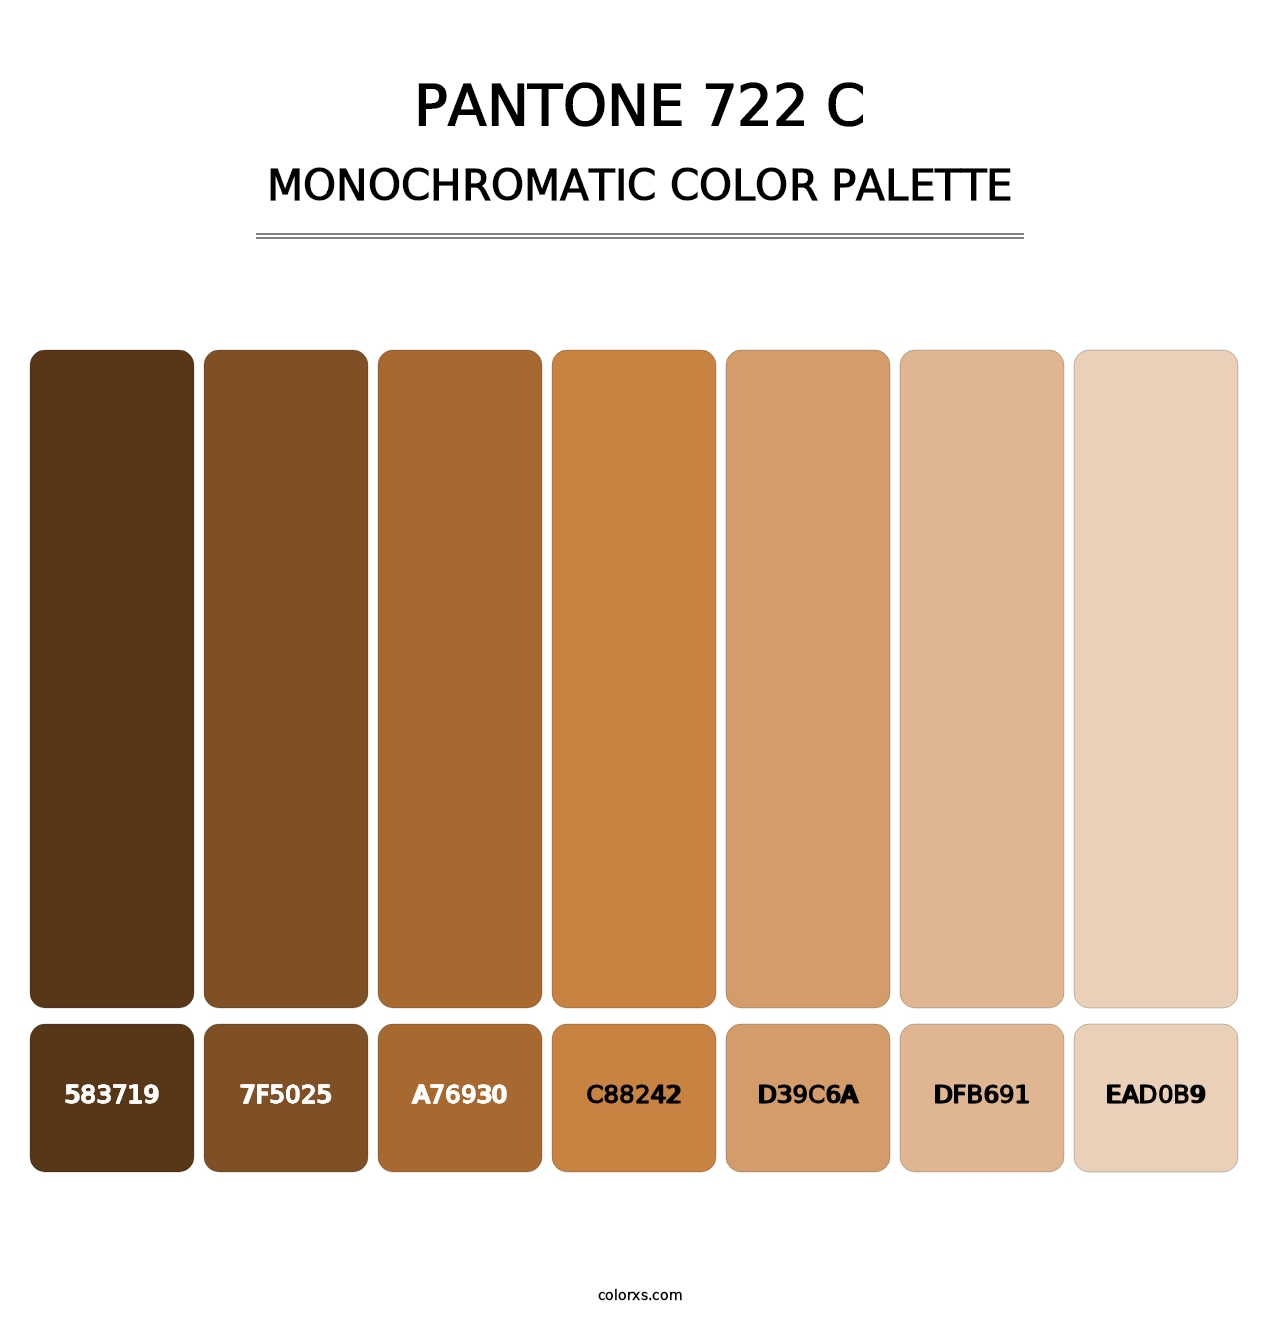 PANTONE 722 C - Monochromatic Color Palette